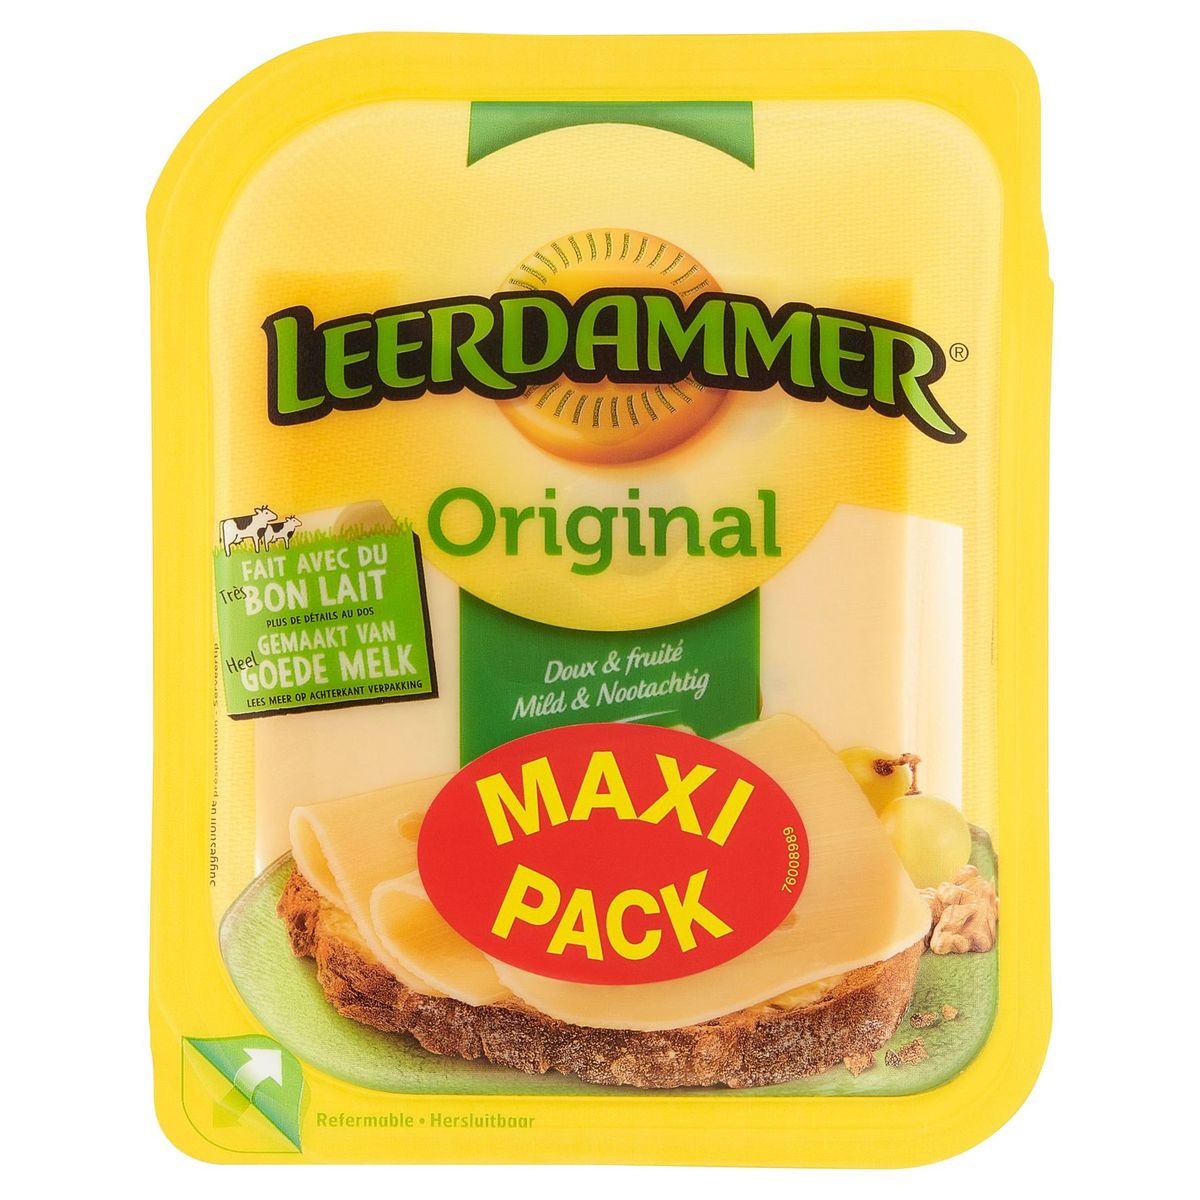 Leerdammer Original Doux & Fruité Maxi Pack 350 g